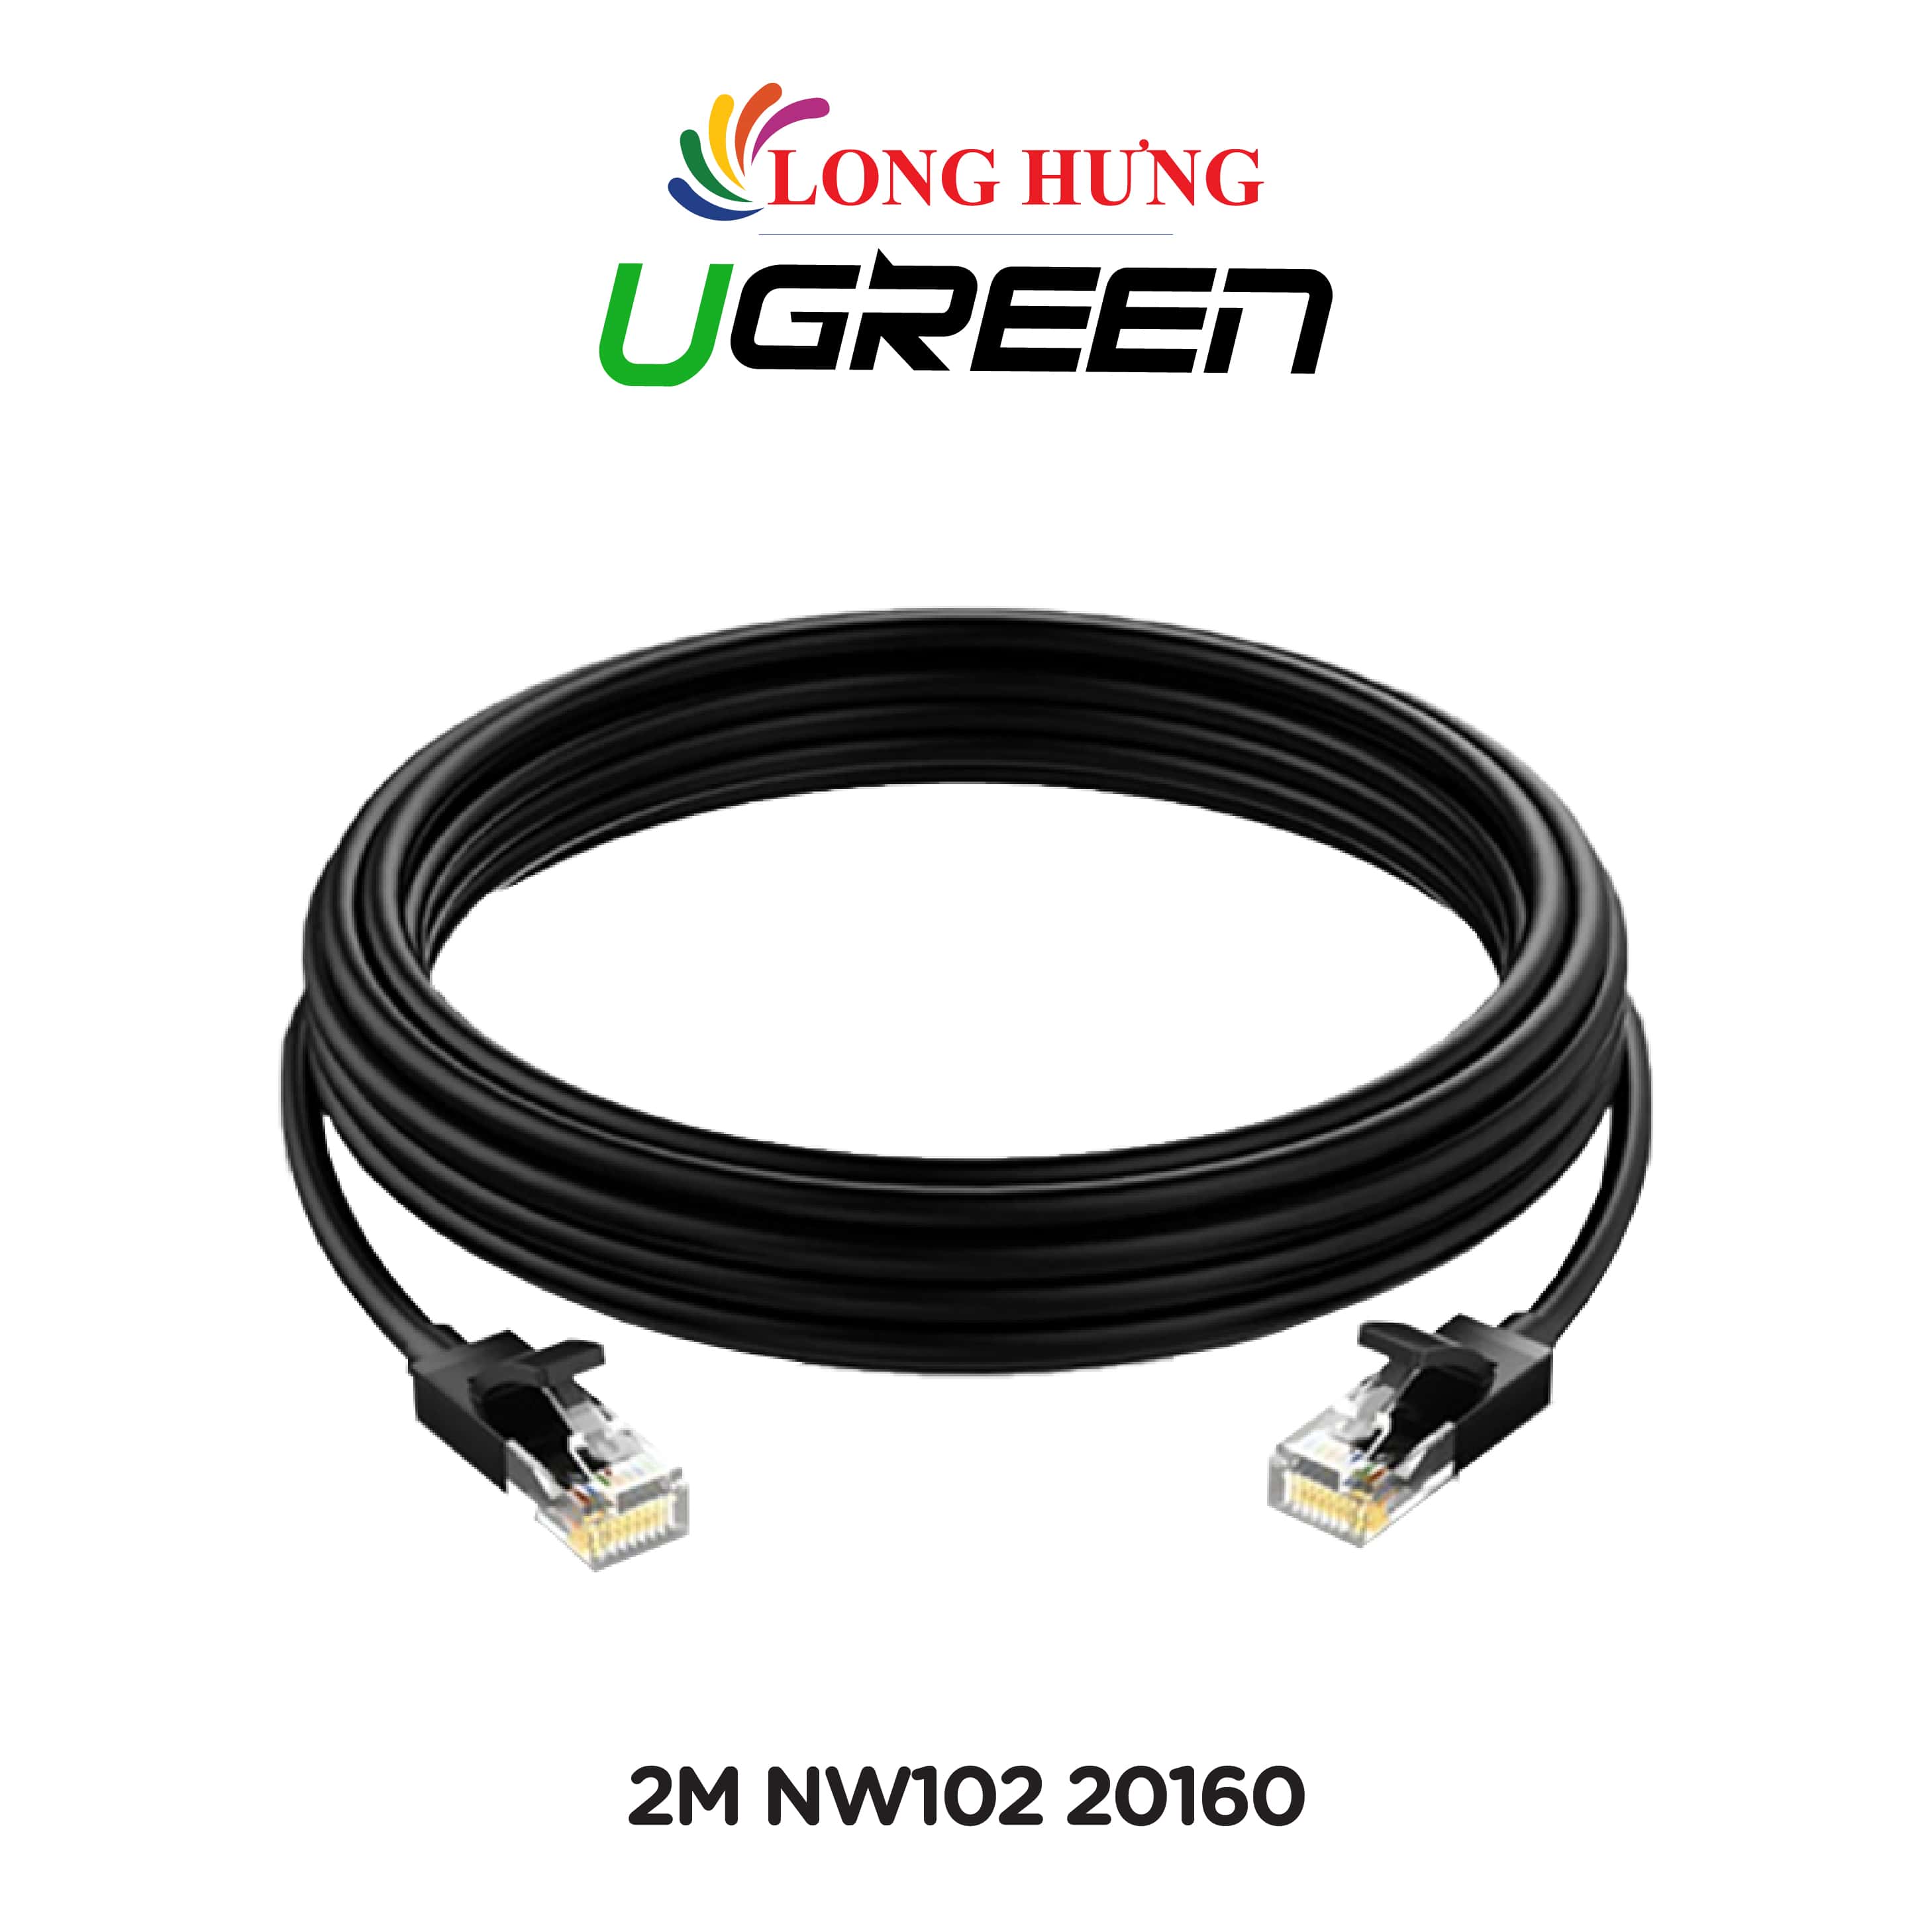 Cáp mạng dạng tròn đen đúc sẵn Ugreen Cat6 UTP 26AWG Lan Cable NW102 - Hàng chính hãng